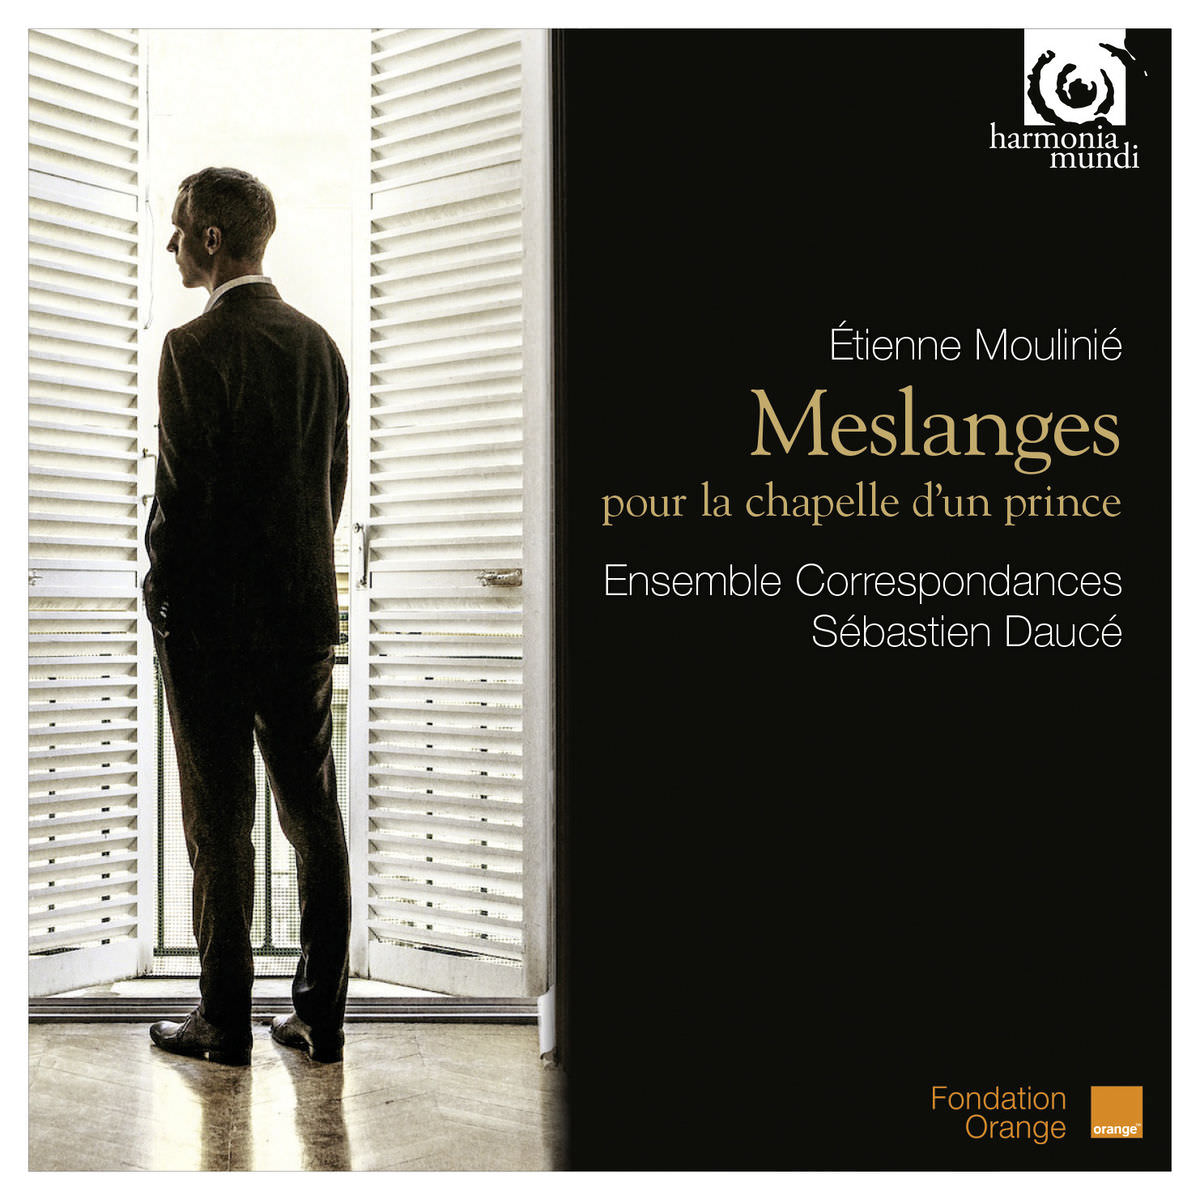 Ensemble Correspondances & Sebastien Dauce - Etienne Moulinie: Meslanges pour la Chapelle d’un Prince (2014) [Qobuz FLAC 24bit/88,2kHz]